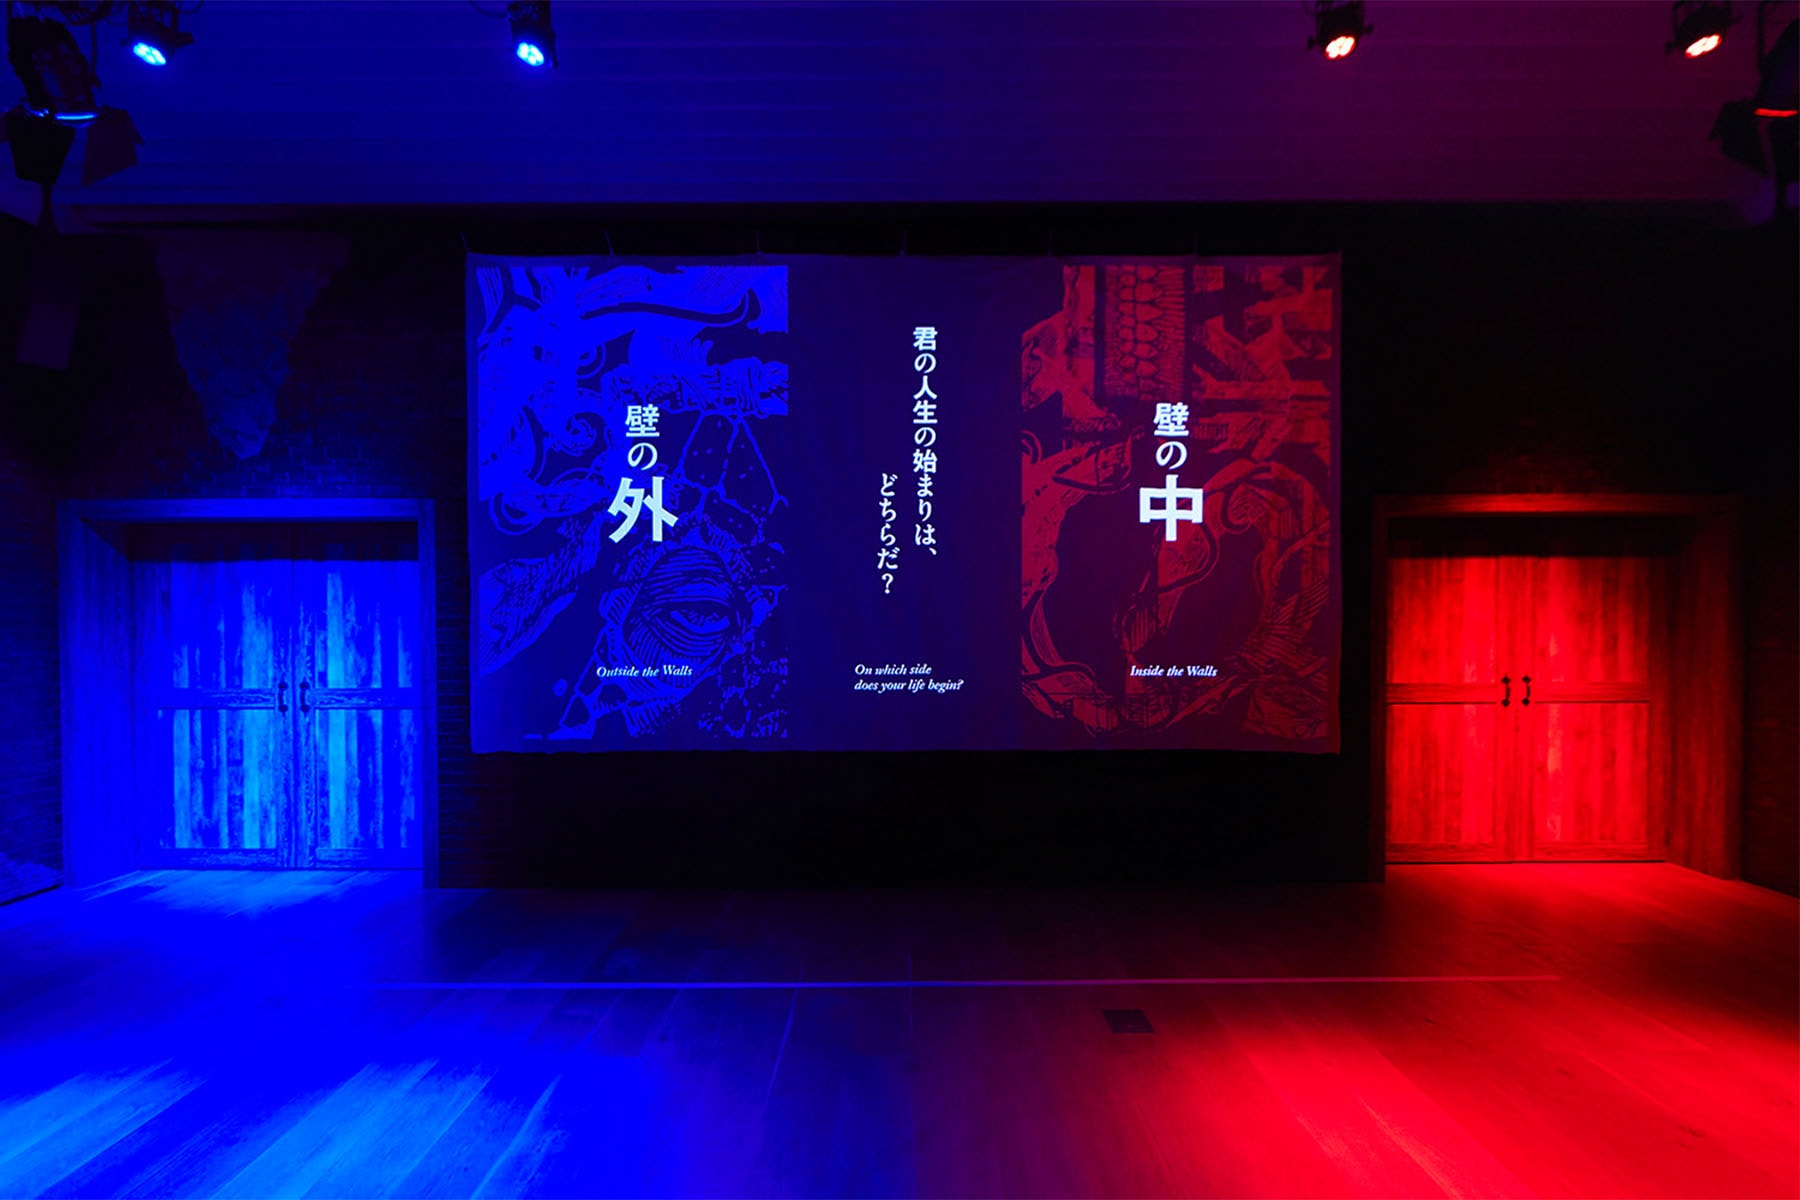 高人氣作品《進擊的巨人展 FINAL》台灣主題展售票資訊正式公開（UPDATE）